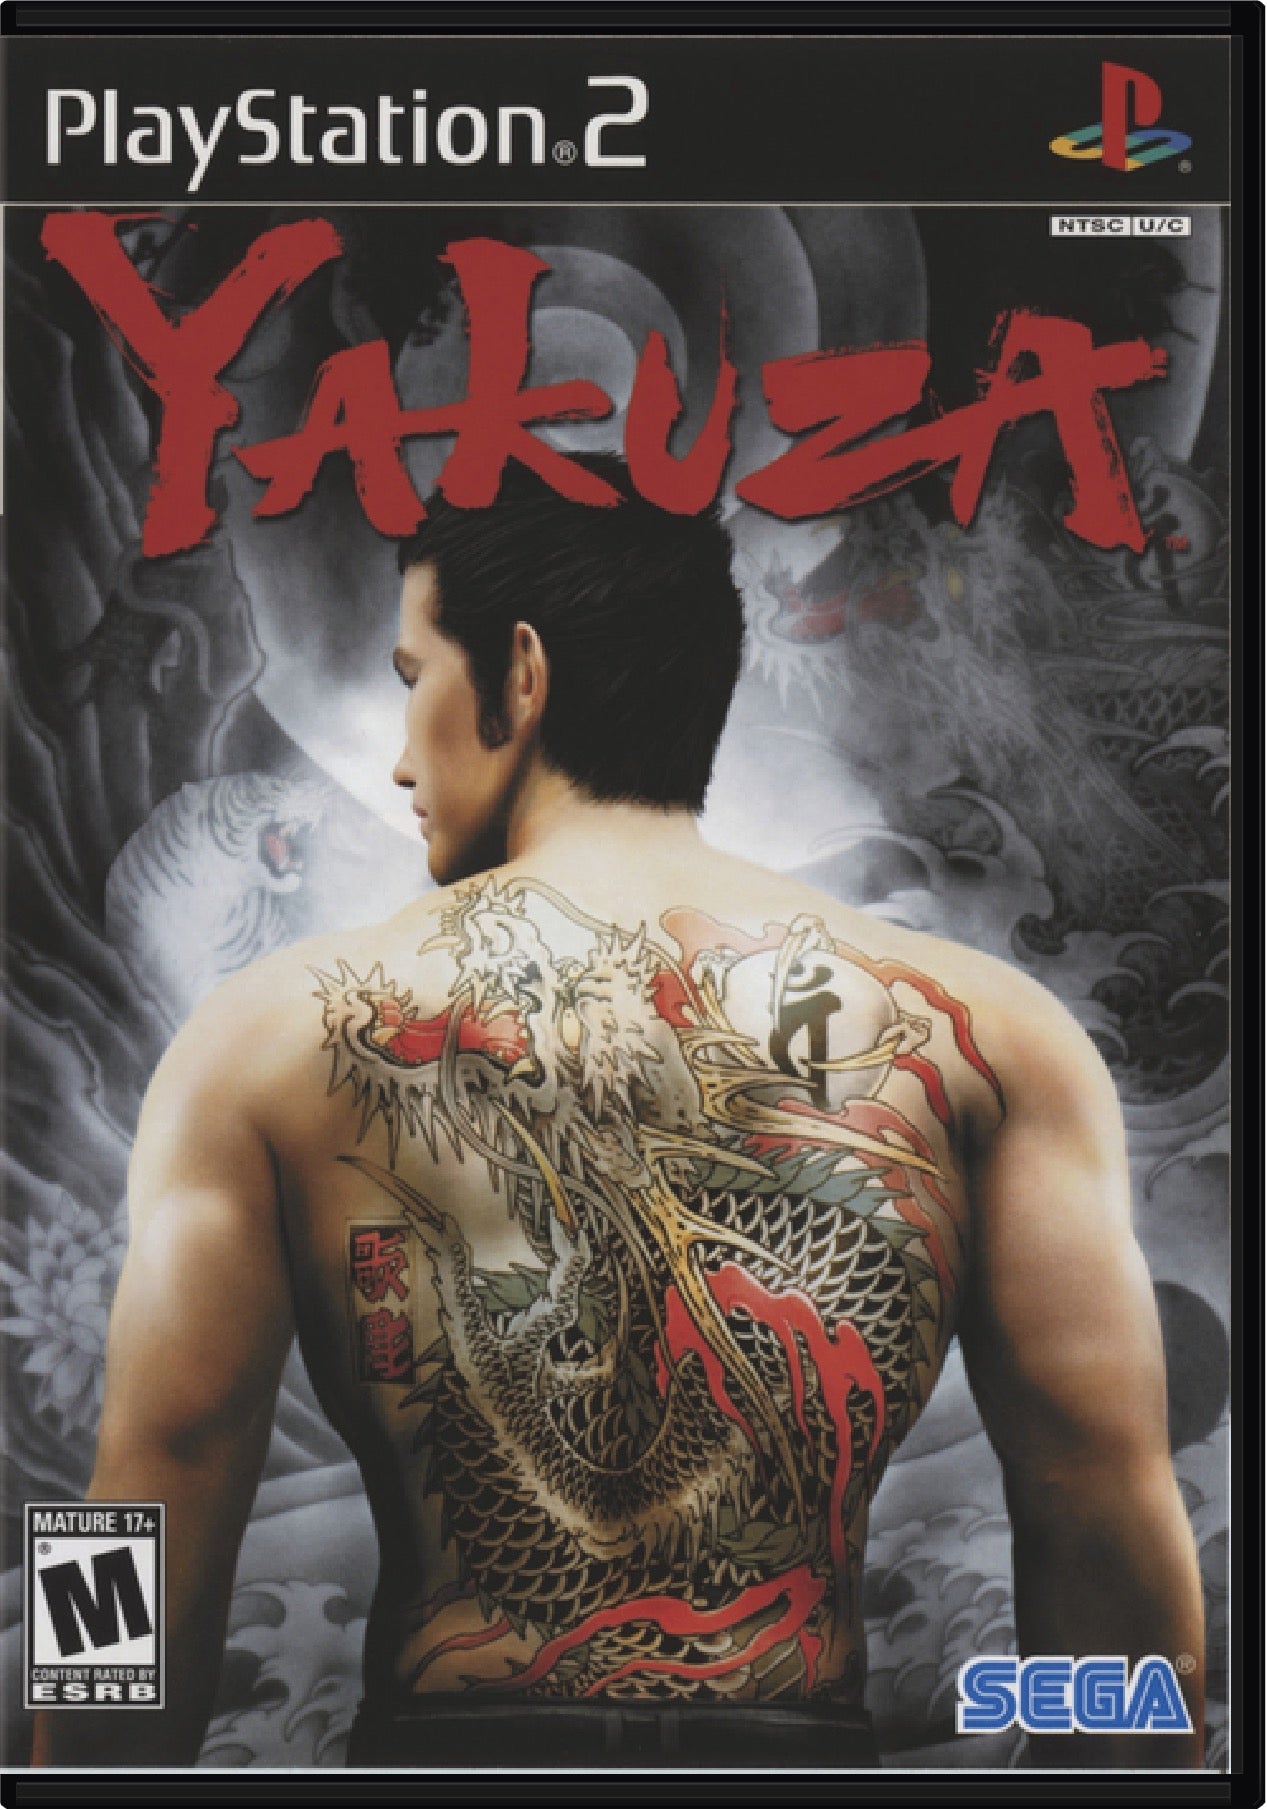 Yakuza Cover Art and Product Photo